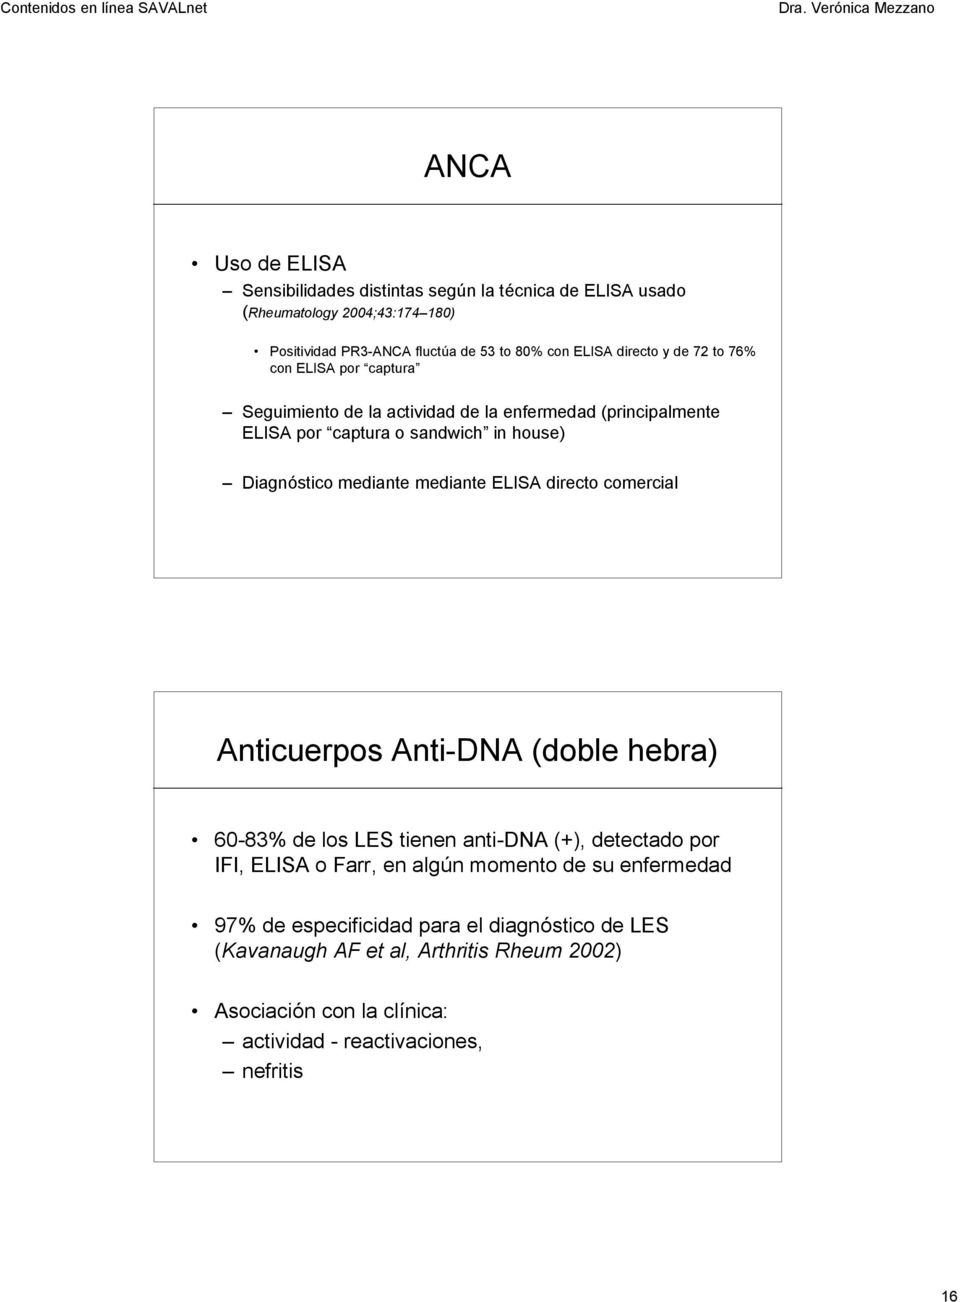 mediante mediante ELISA directo comercial Anticuerpos Anti-DNA (doble hebra) 60-83% de los LES tienen anti-dna (+), detectado por IFI, ELISA o Farr, en algún